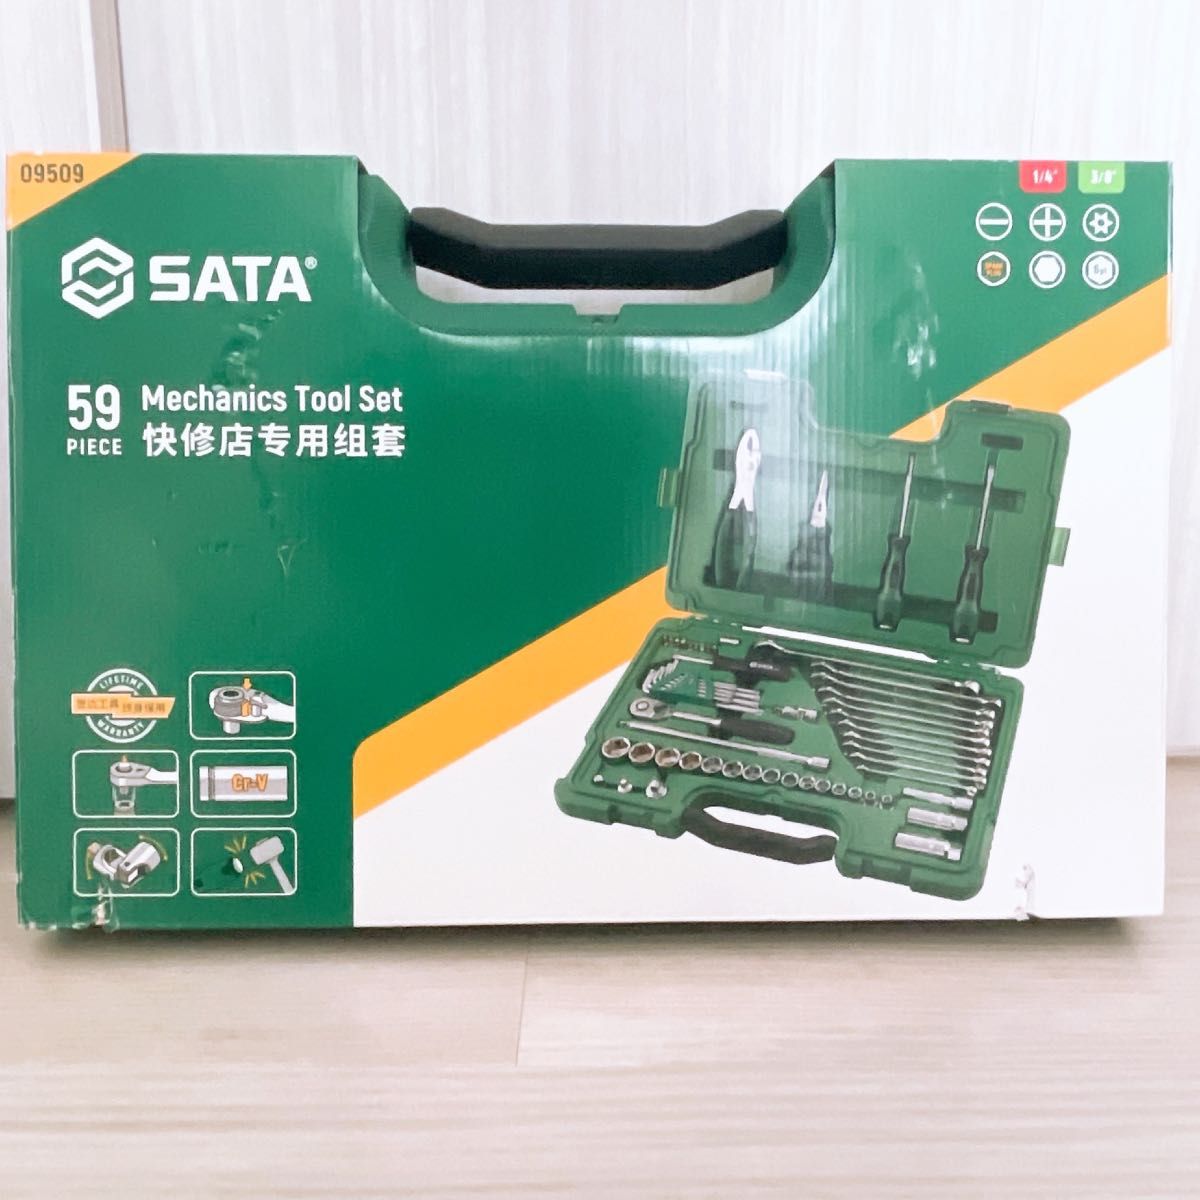 【ほぼ新品】SATA 工具セット 59個組 EA689SC-1 